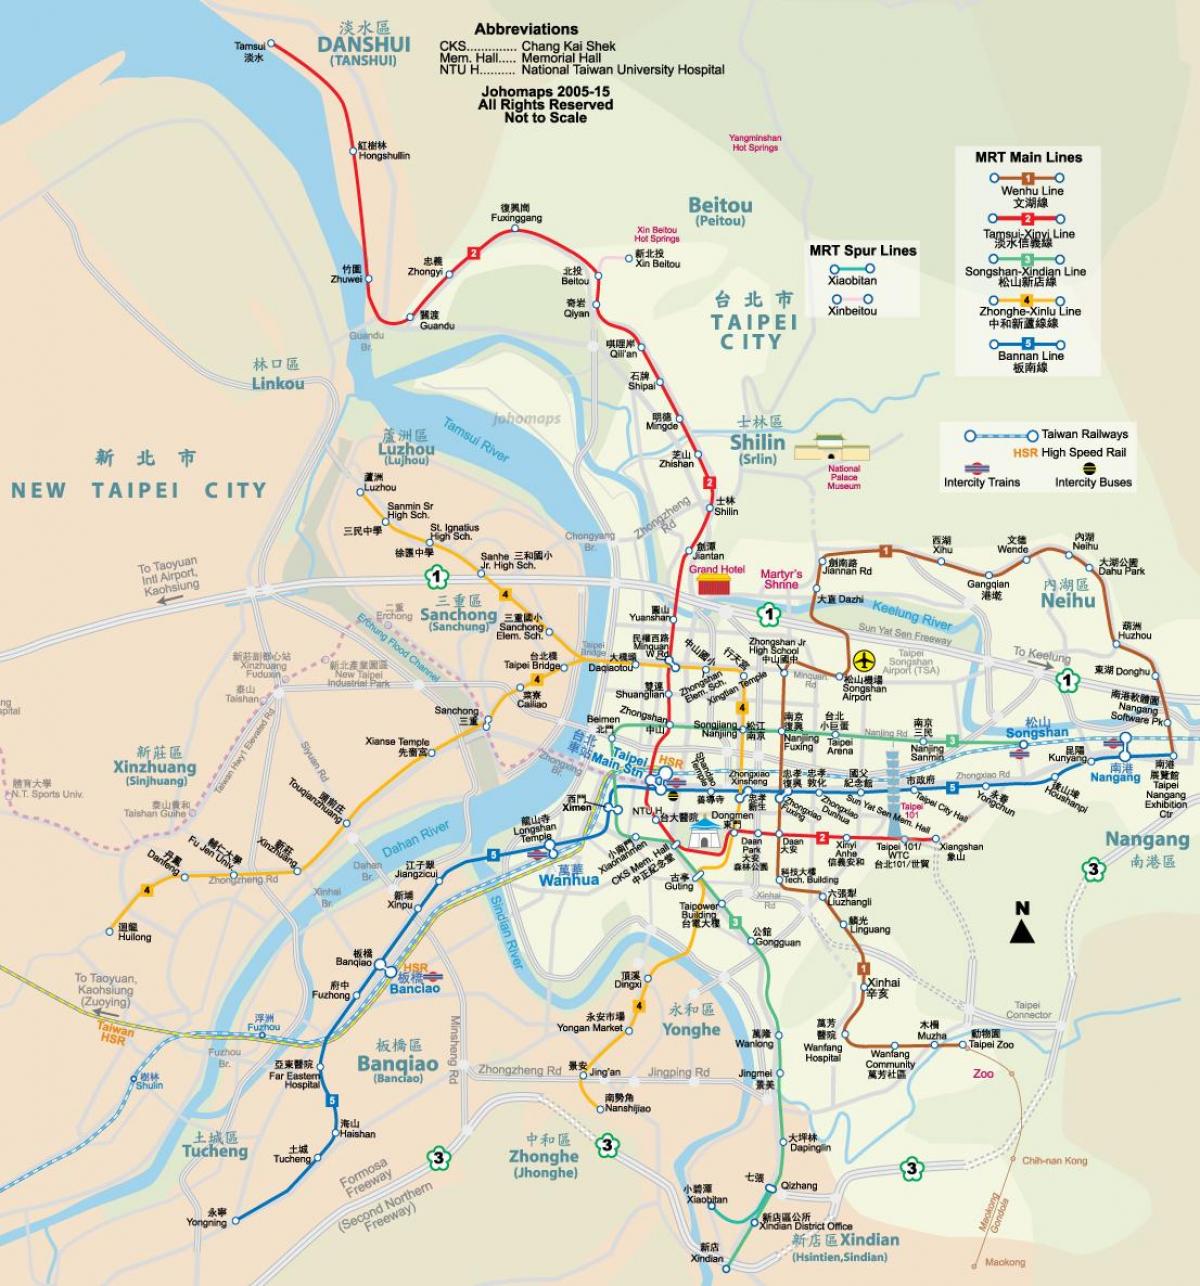 Taipei city χάρτης